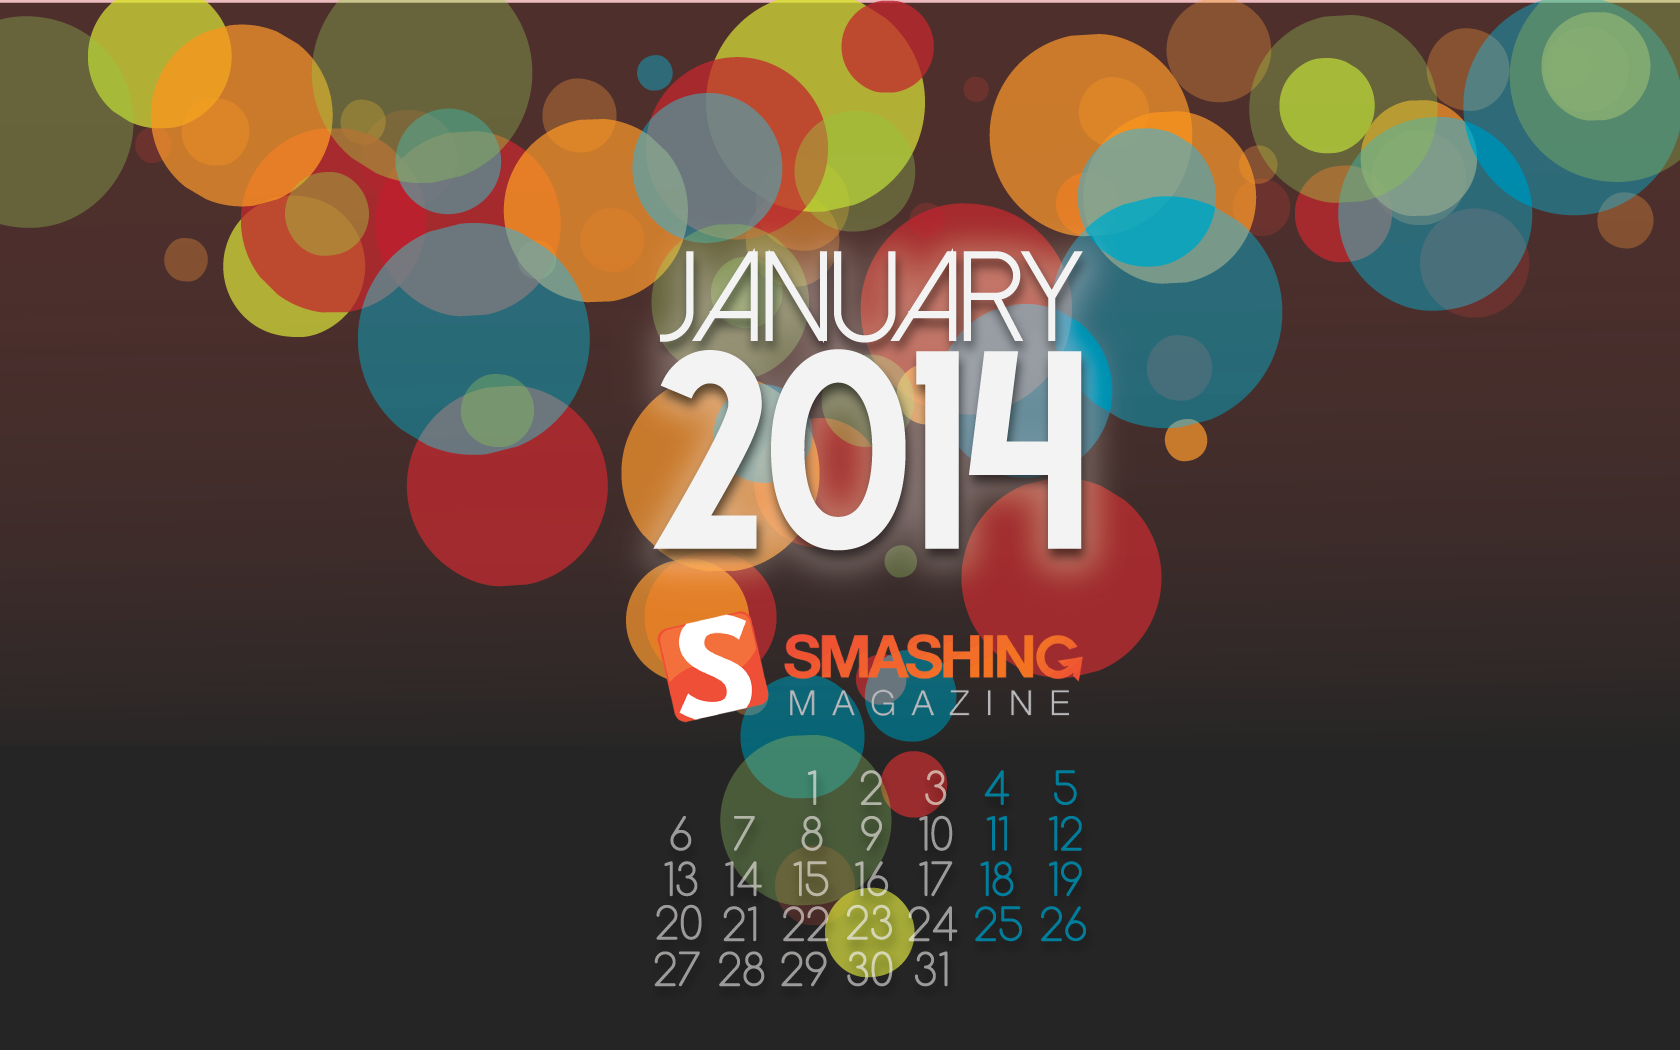 Free download WallpapersKu Smashing Magazine Wallpaper Calendars June